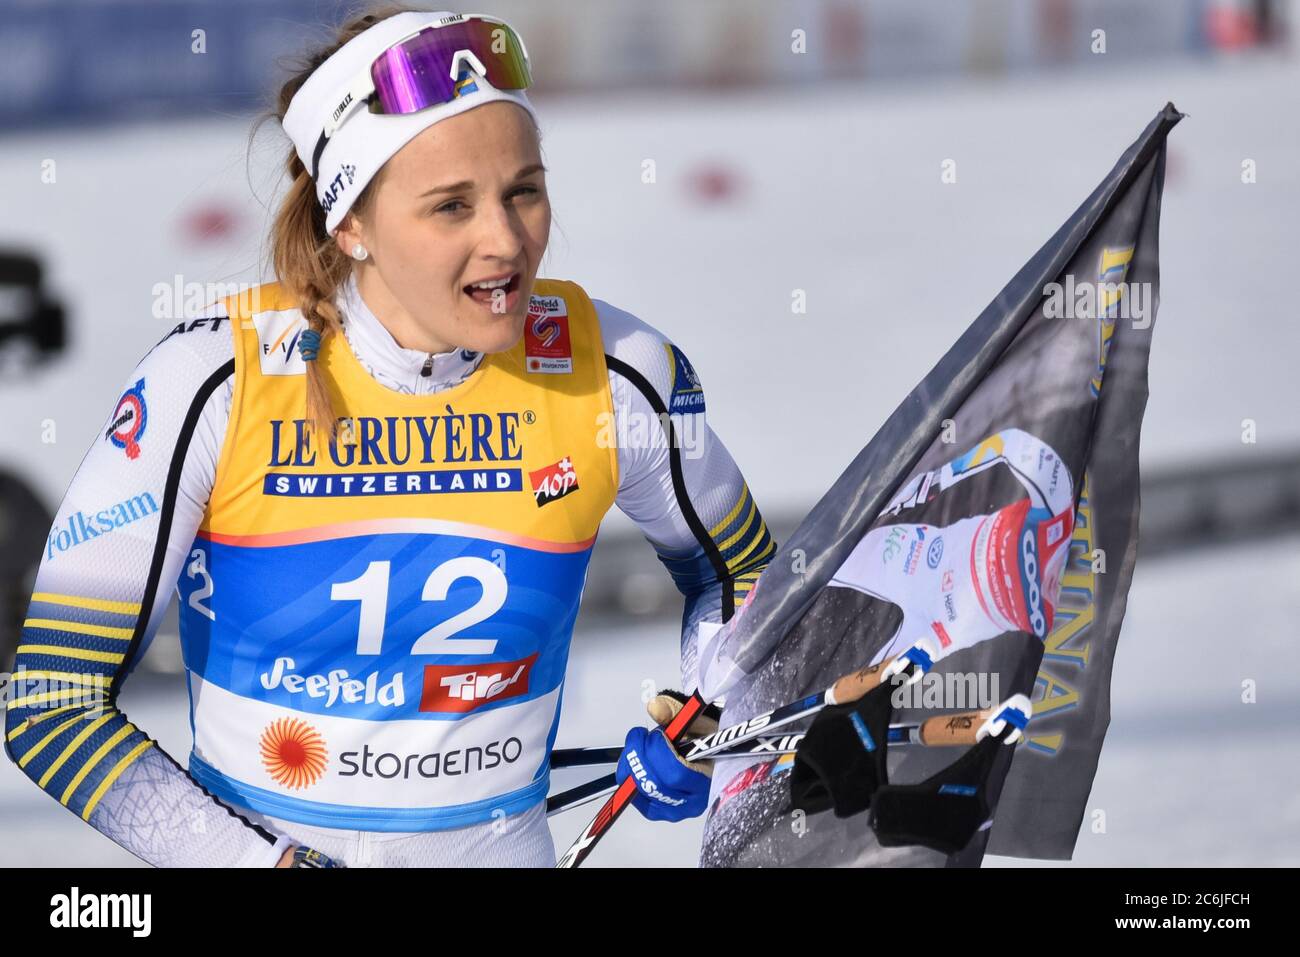 La svedese Stina Nilsson dopo aver concluso il secondo in volata ai Campionati mondiali di sci nordico FIS 2019, Seefeld, Austria. Foto Stock